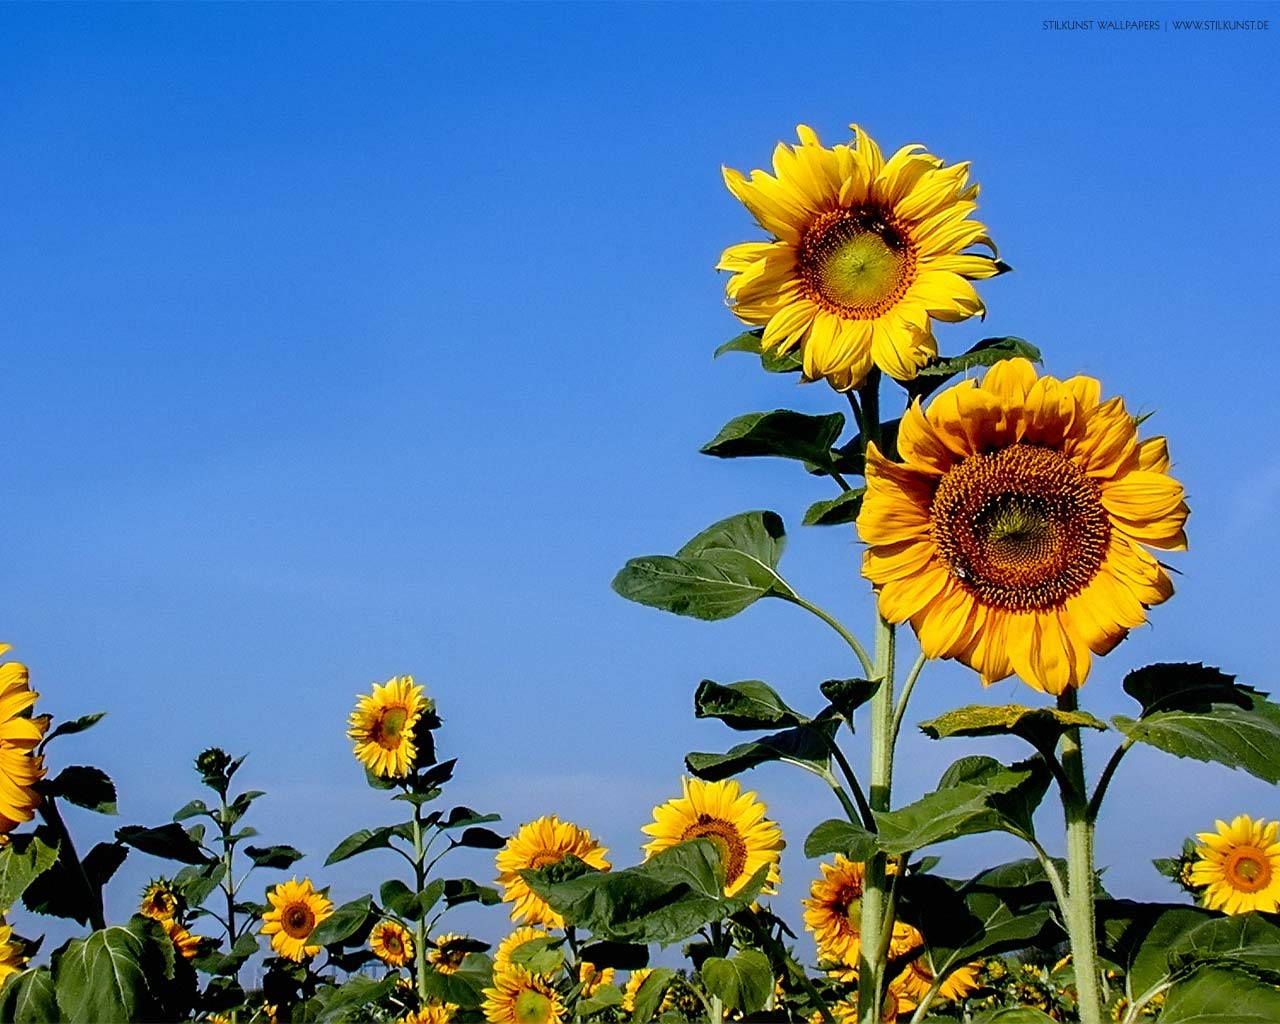 Sonnenblumen auf dem Feld | 1280 x 1024px | Bild: ©by Sabrina | Reiner | www.stilkunst.de | Lizenz: CC BY-SA